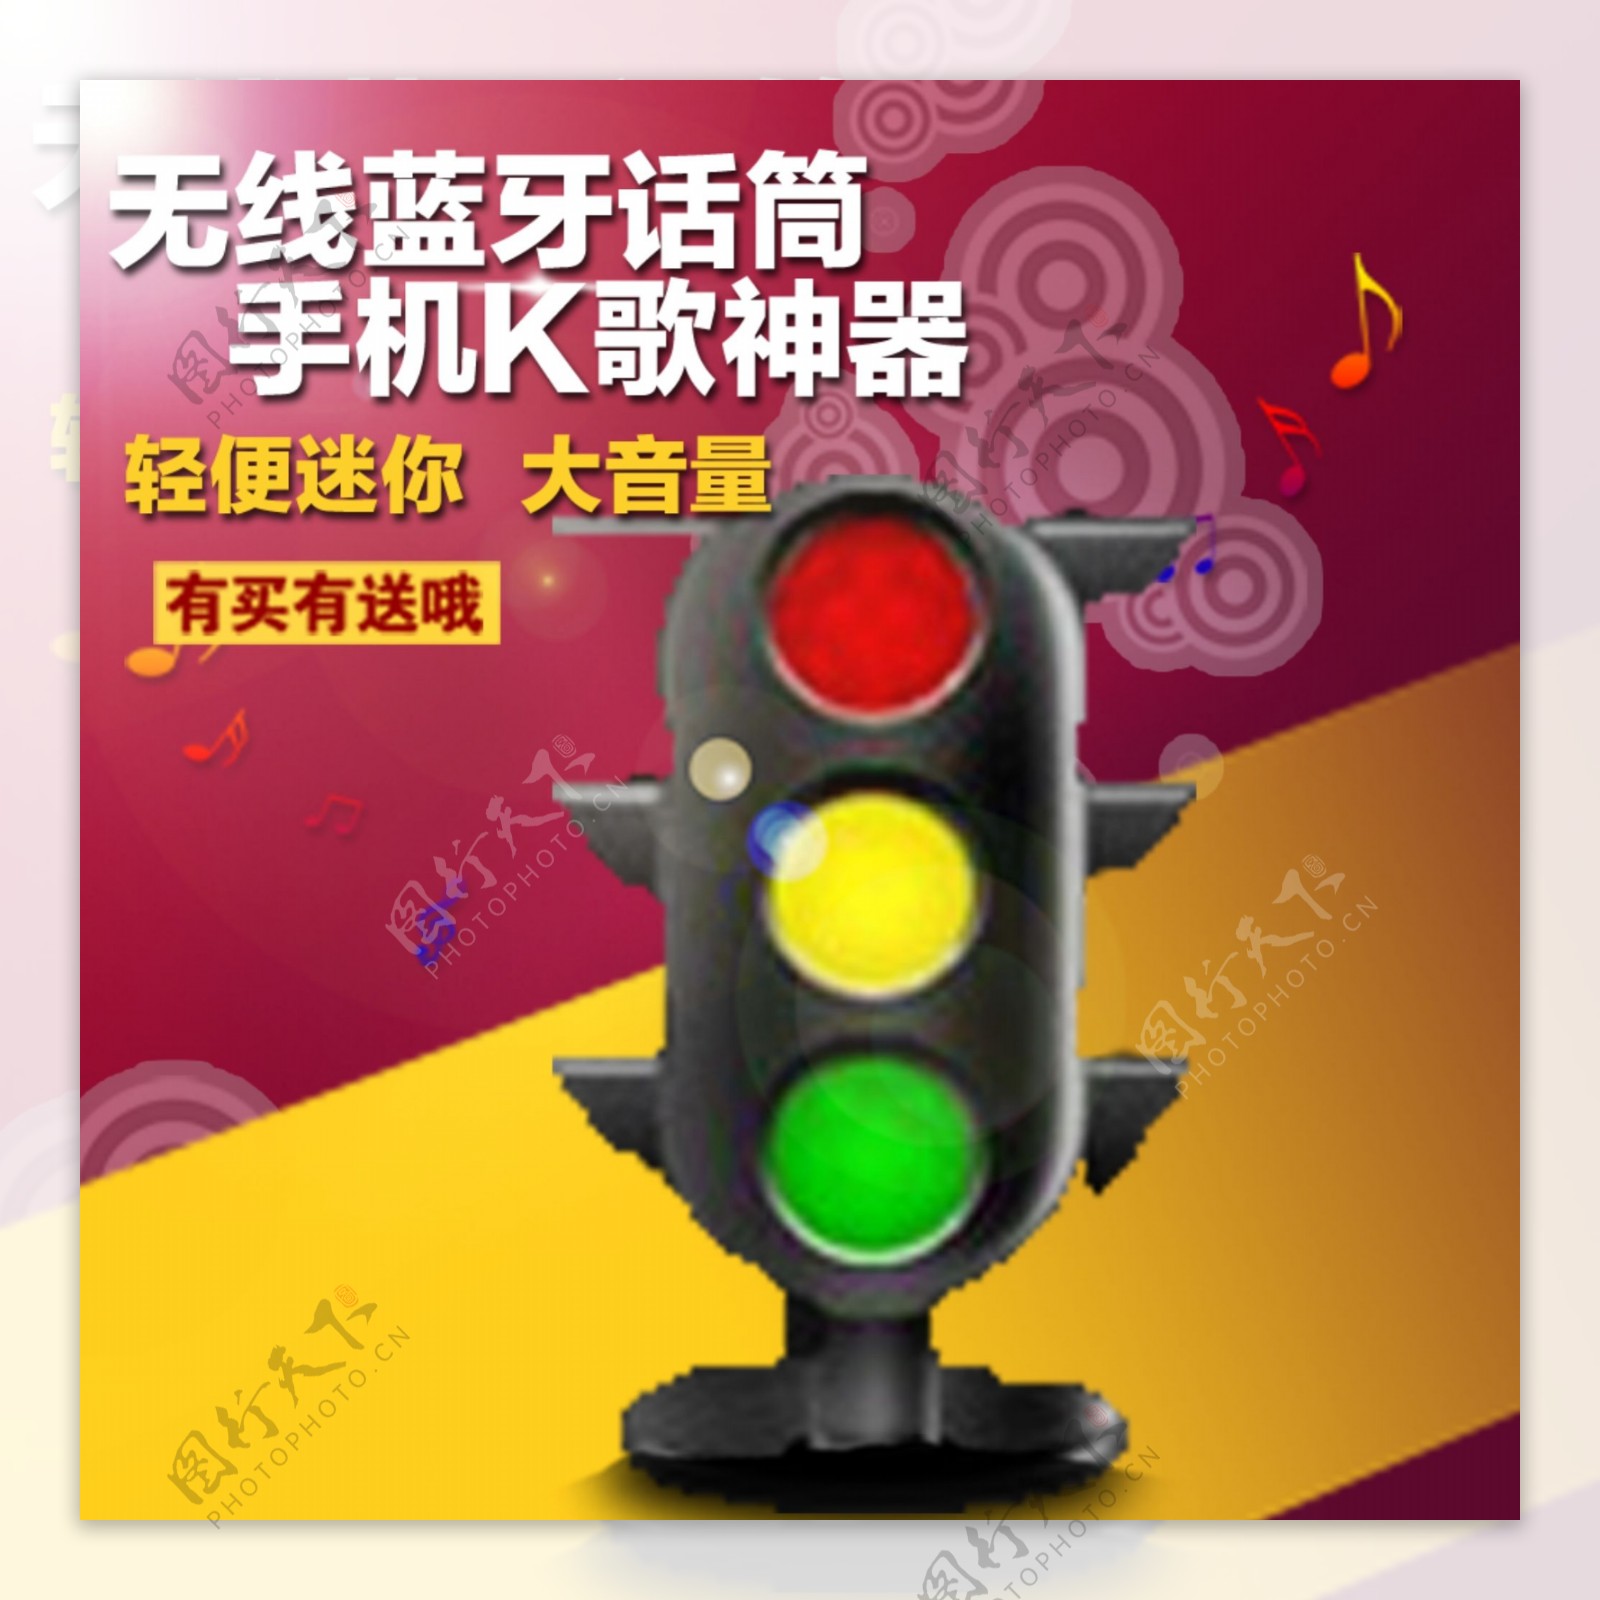 中国红黄色音符直通车焦点图主图